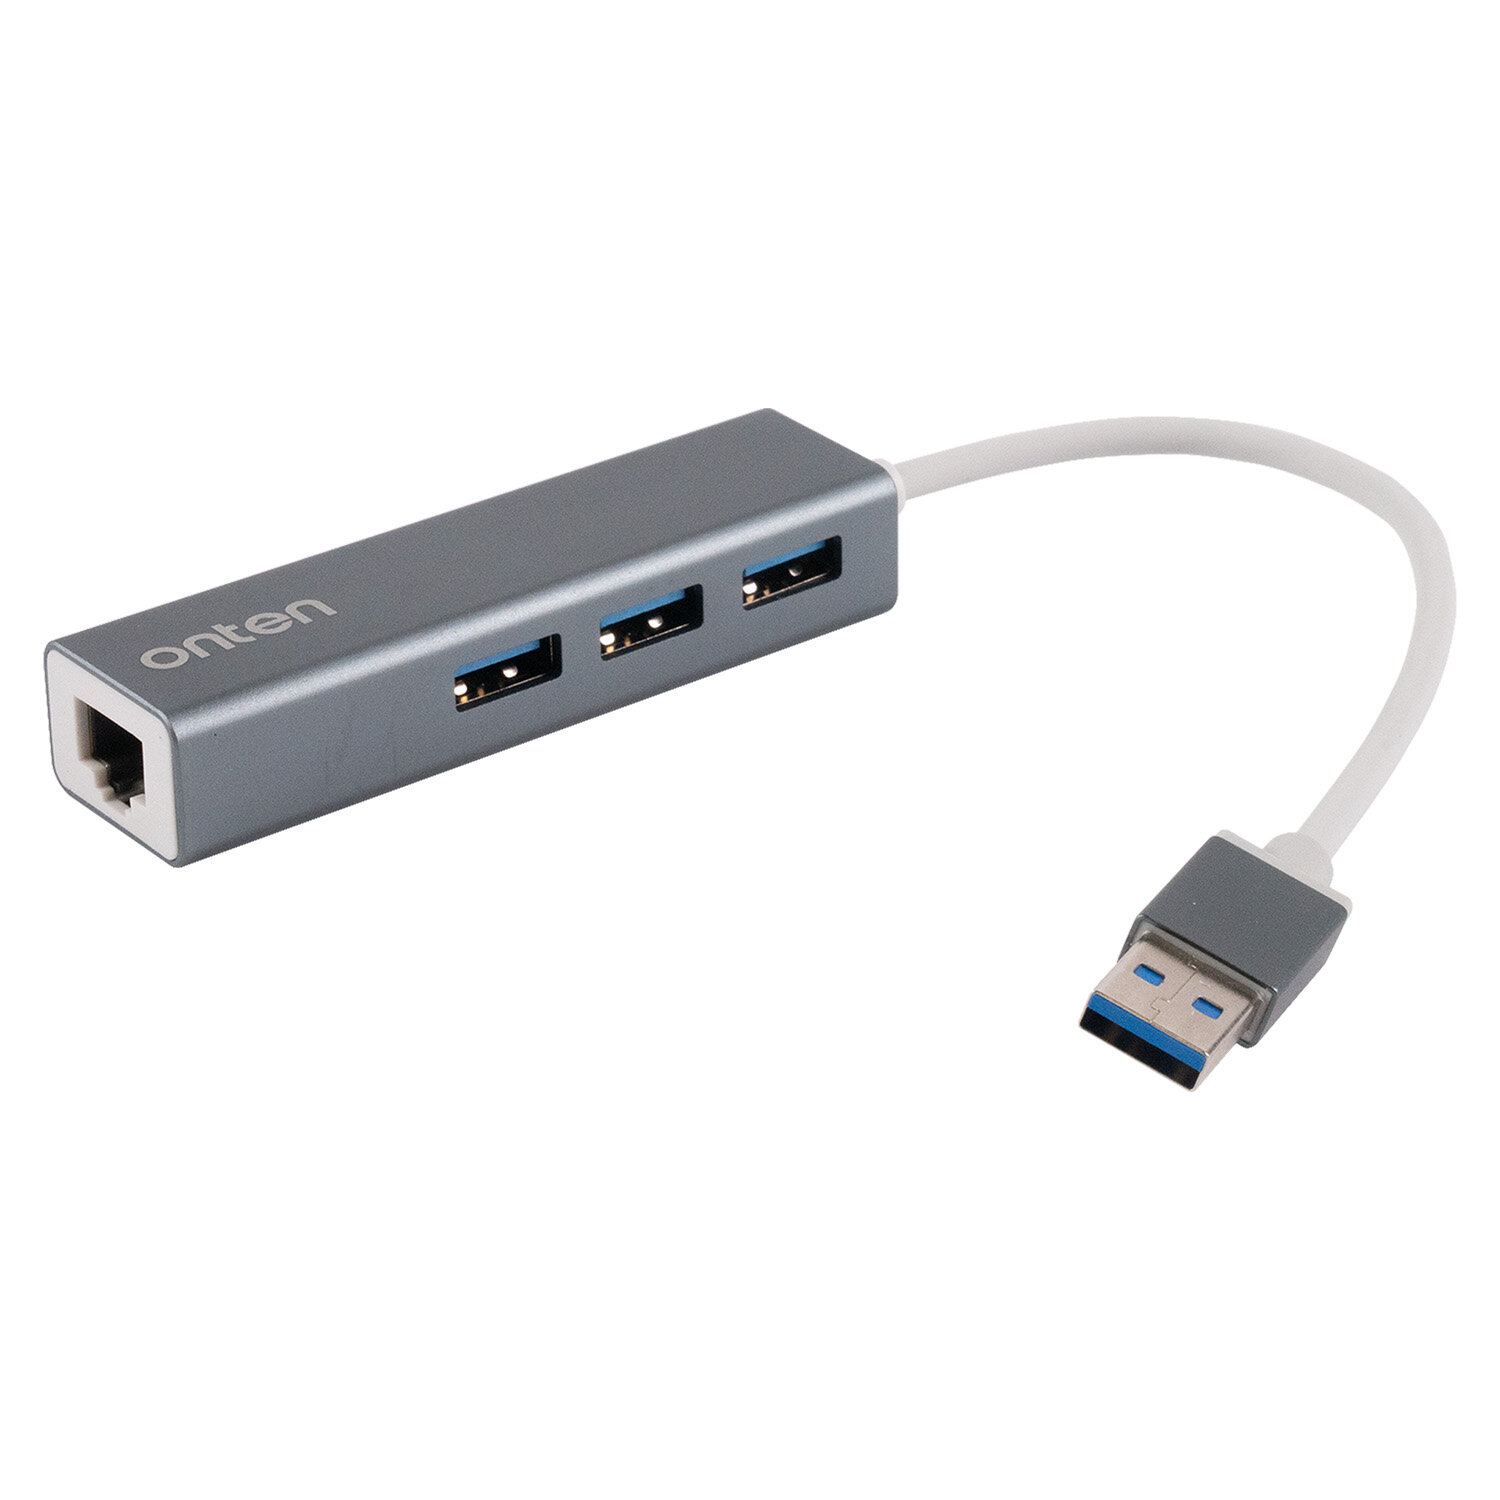 Разветвитель переходник USB HUB Хаб Onten OTN-5226 4в1 3 порта USB+RJ45 Ethernet 0.2м док станция, адаптер